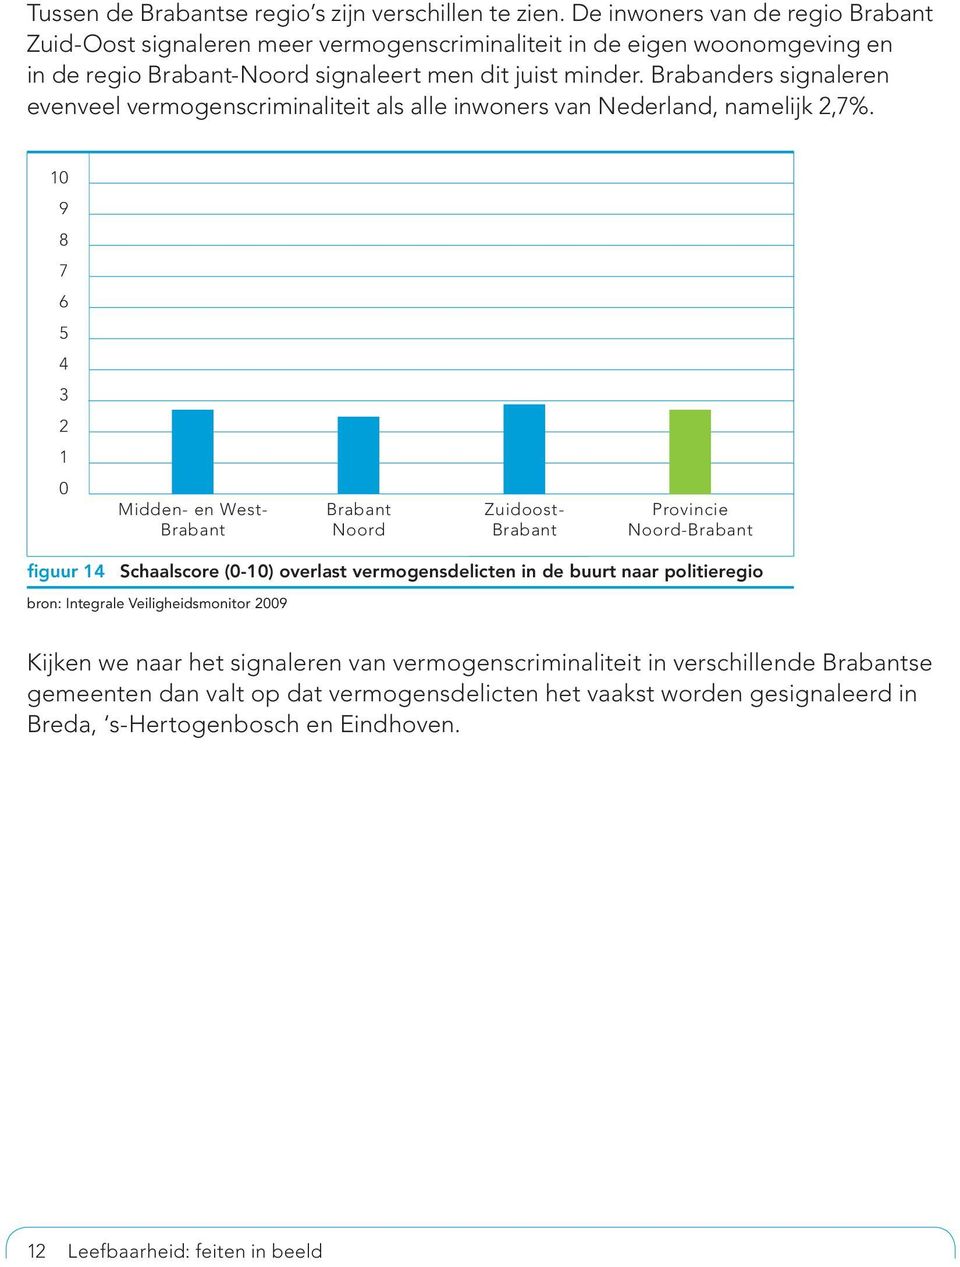 Brabanders signaleren evenveel vermogenscriminaliteit als alle inwoners van Nederland, namelijk 2,7%.